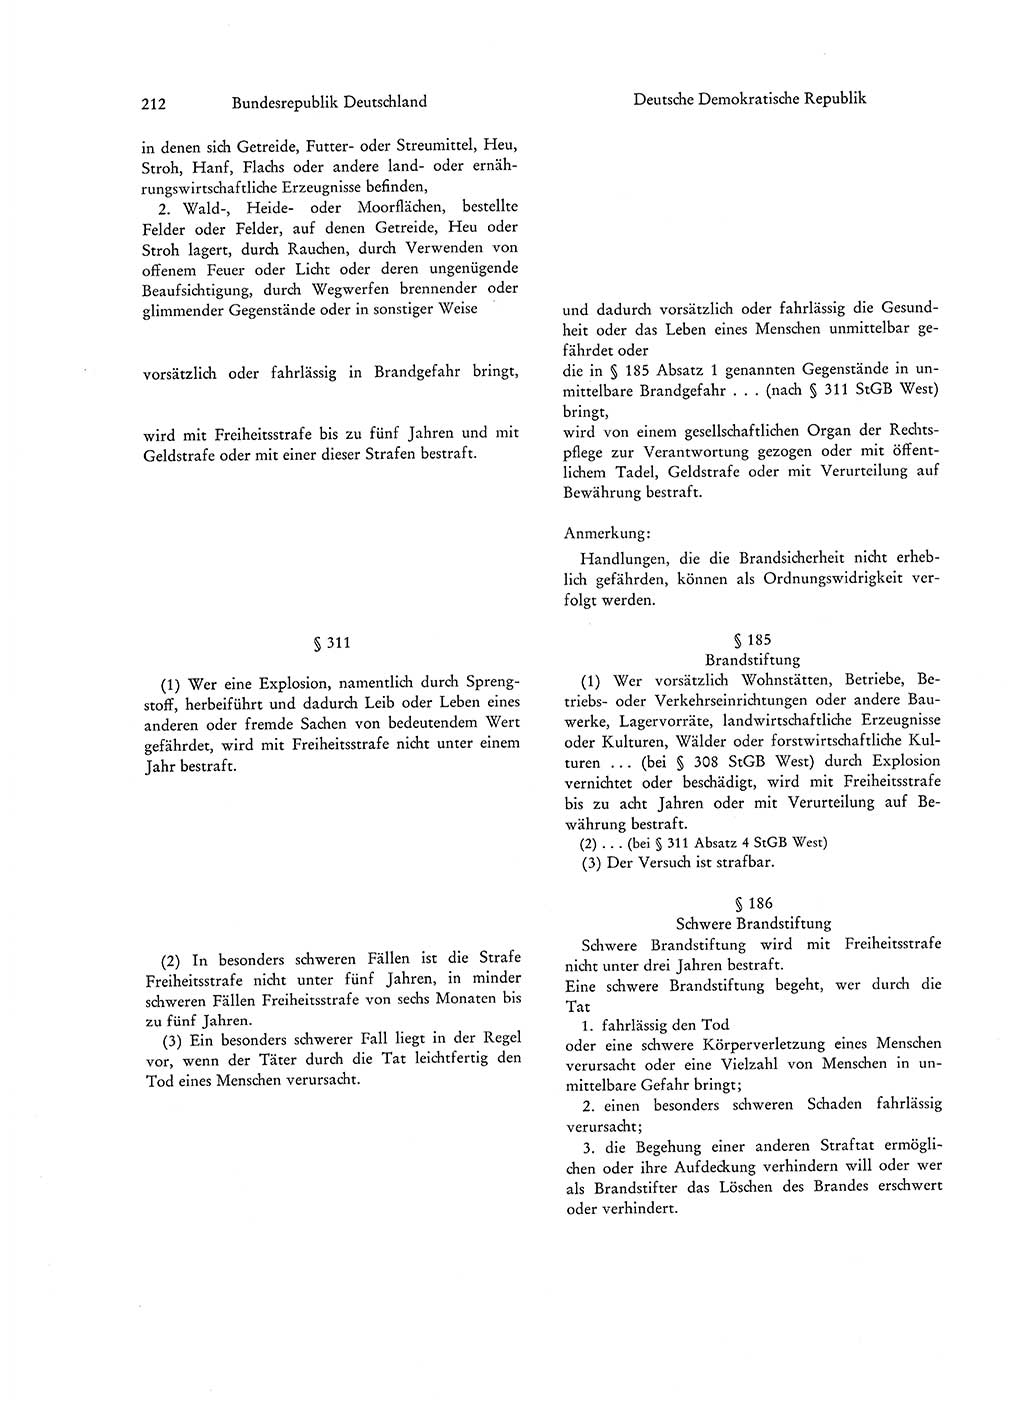 Strafgesetzgebung in Deutschland [Bundesrepublik Deutschland (BRD) und Deutsche Demokratische Republik (DDR)] 1972, Seite 212 (Str.-Ges. Dtl. StGB BRD DDR 1972, S. 212)